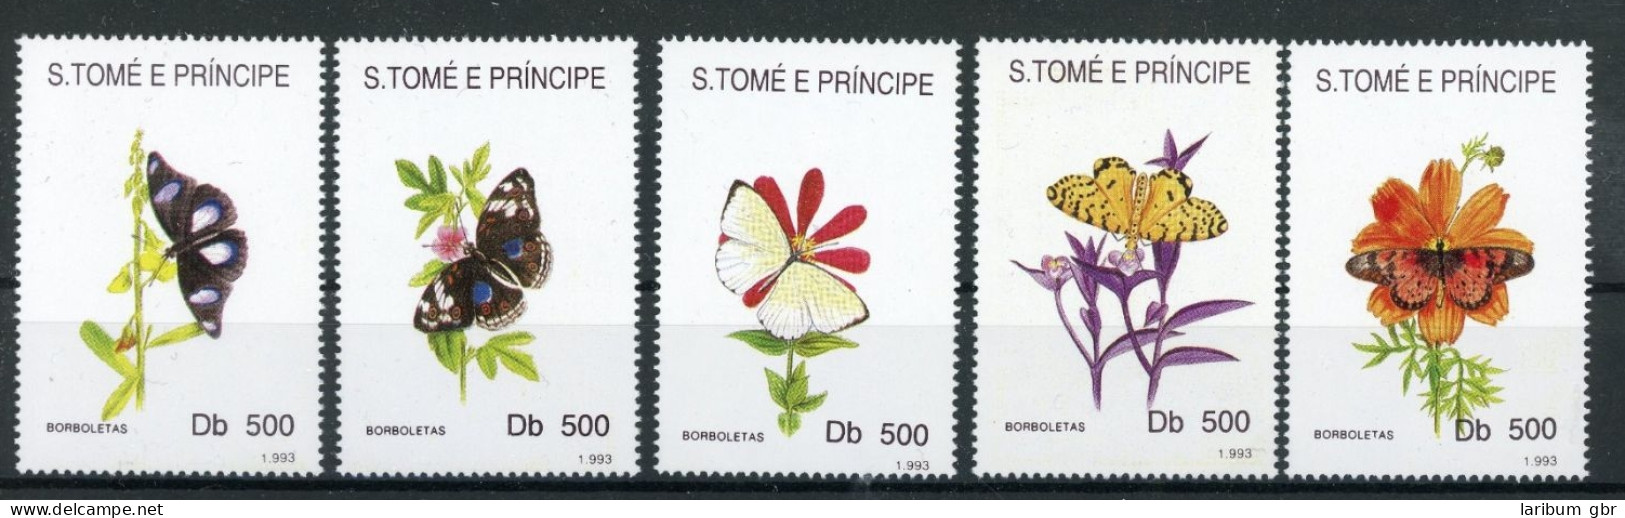 Sao Tome E Principe 1399-1403 Postfrisch Schmetterling #JT954 - Sao Tome Et Principe